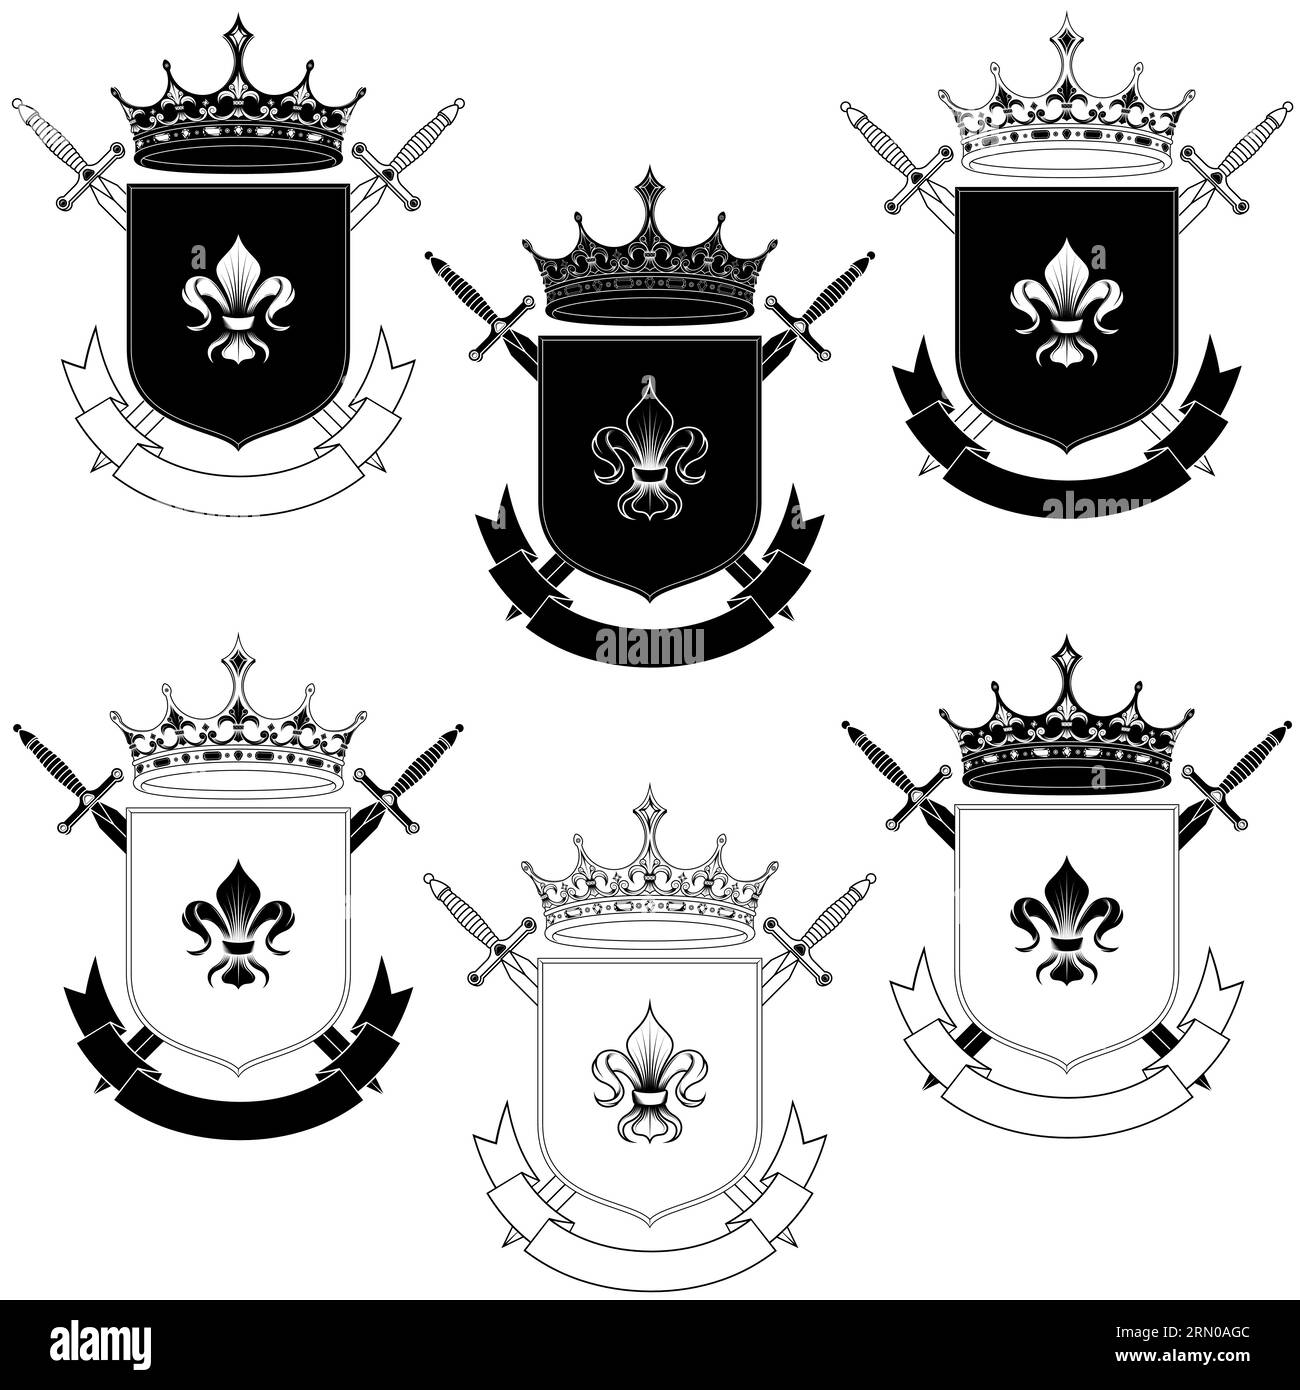 Diseño de vectores de escudo heráldico de la Edad Media, escudo de armas con símbolo heráldico de fleur de lis, con coronas y espadas Ilustración del Vector